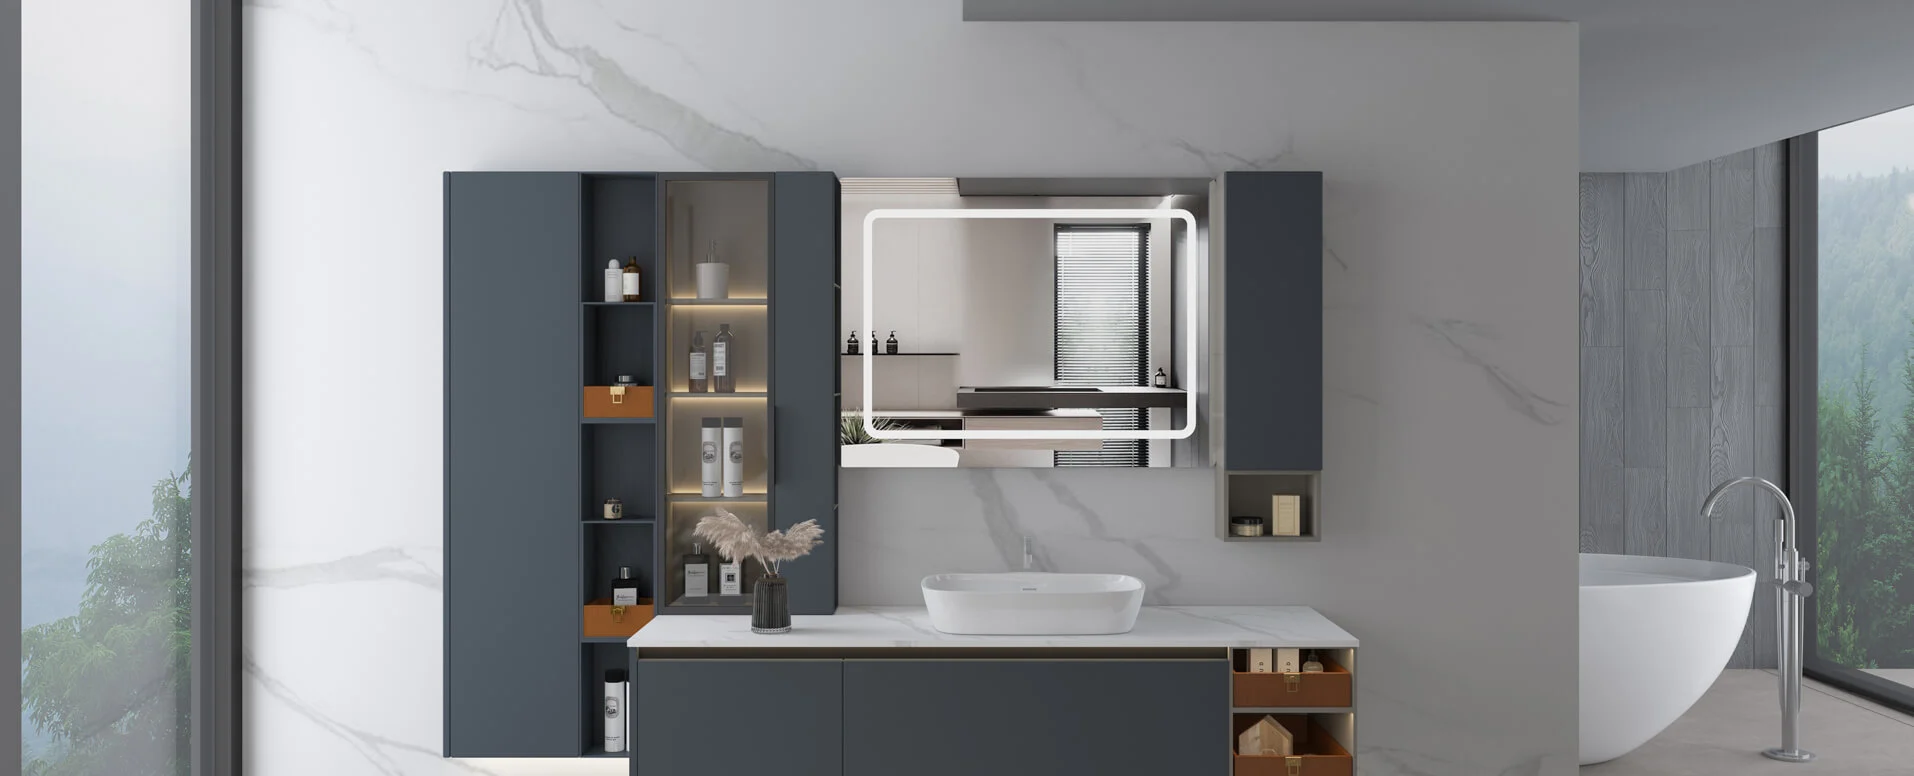 Какой материал лучше всего подходит для современных шкафов для ванной комнаты?